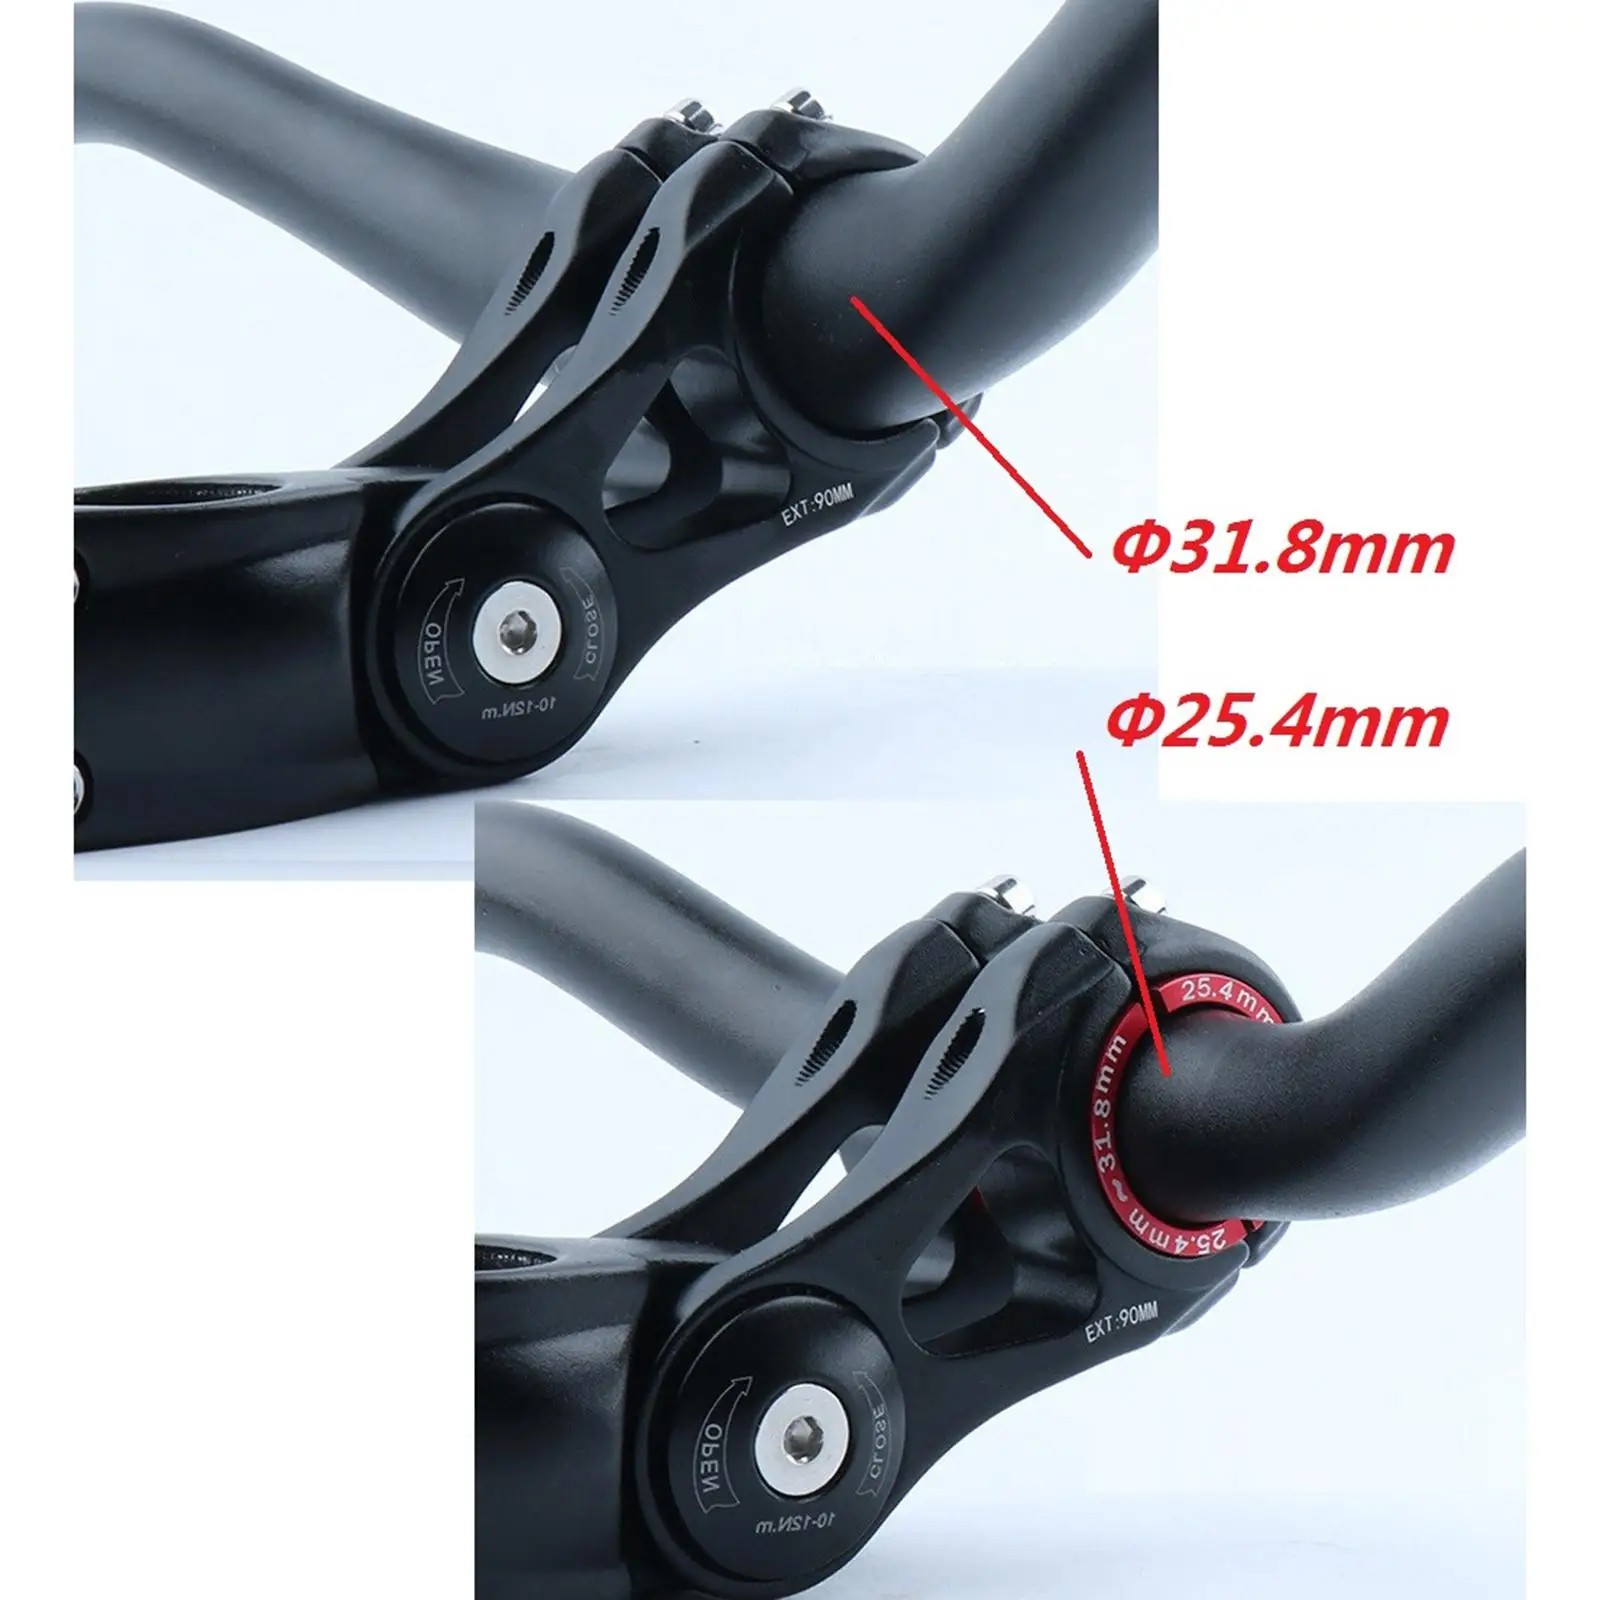 Преобразование диаметра прокладки переднего штока велосипеда в диаметр прокладки переднего штока велосипеда 1